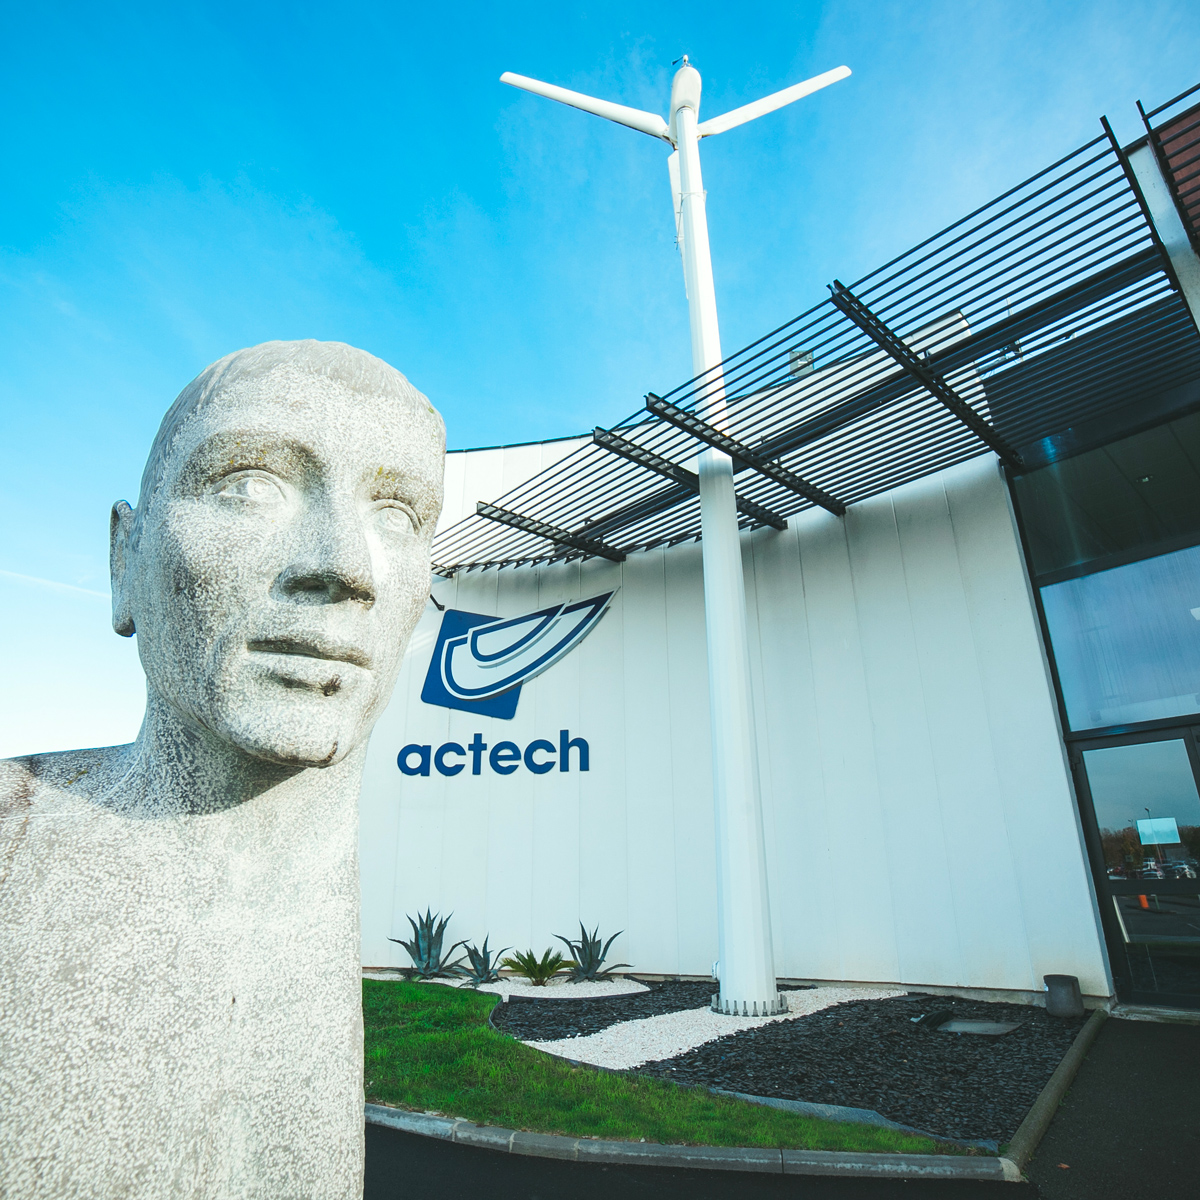 Actech innovation - actech innovation - angers - Bureau d'études en ingénierie mécanique - Bureau d'études Angers - poste d'ingénieur - recherche et développement